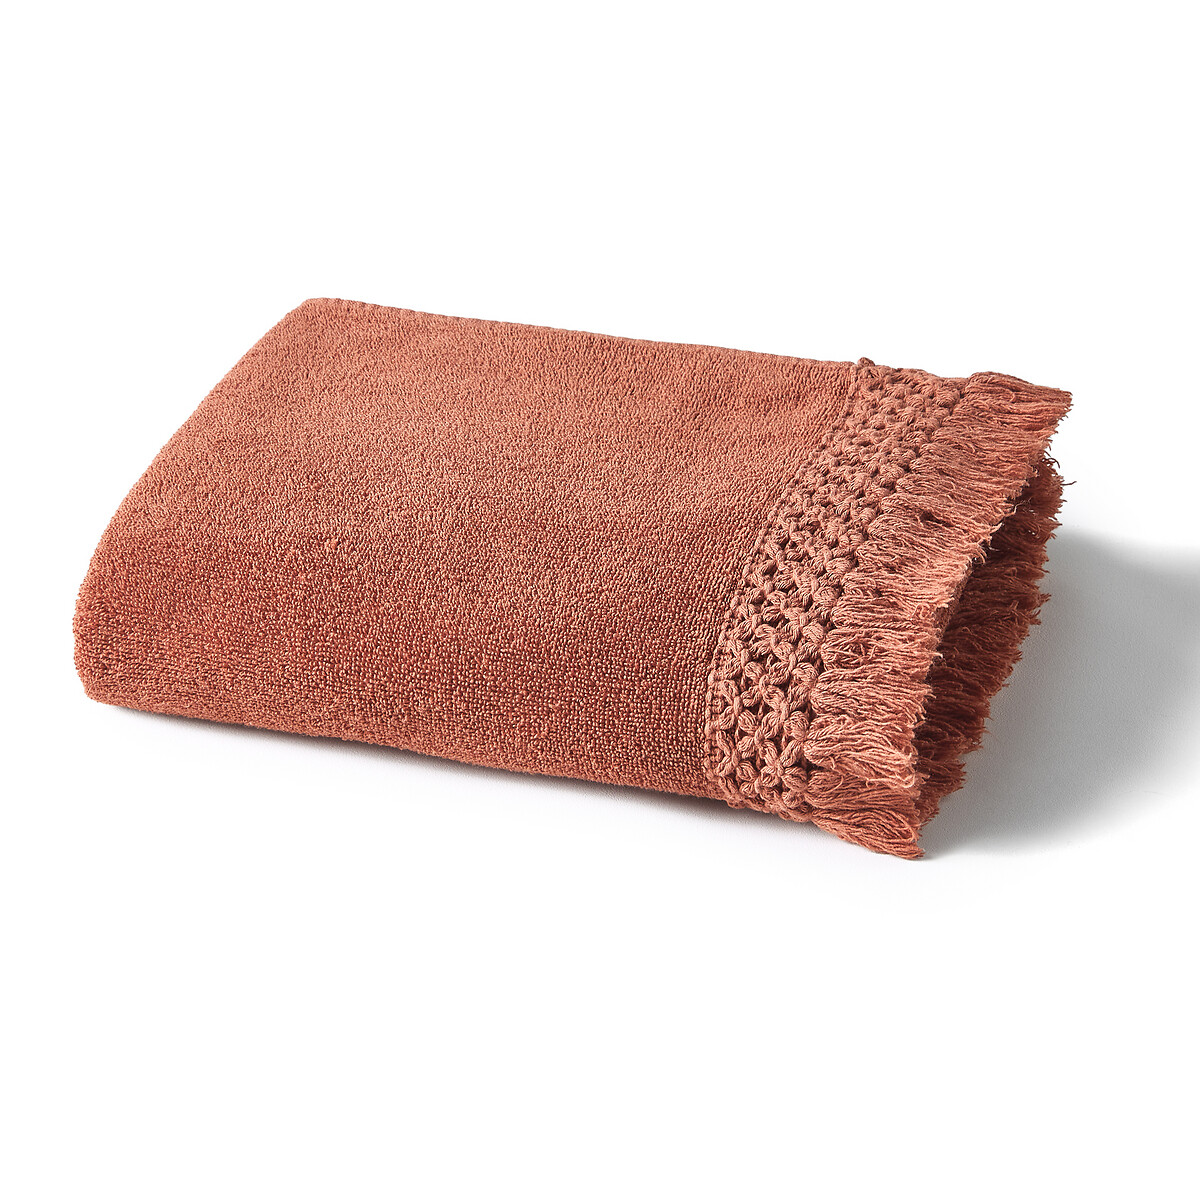 Одеяло La Redoute Махровое из хлопка и вышивкой крючком Majorque 50 x 100 см каштановый, размер 50 x 100 см